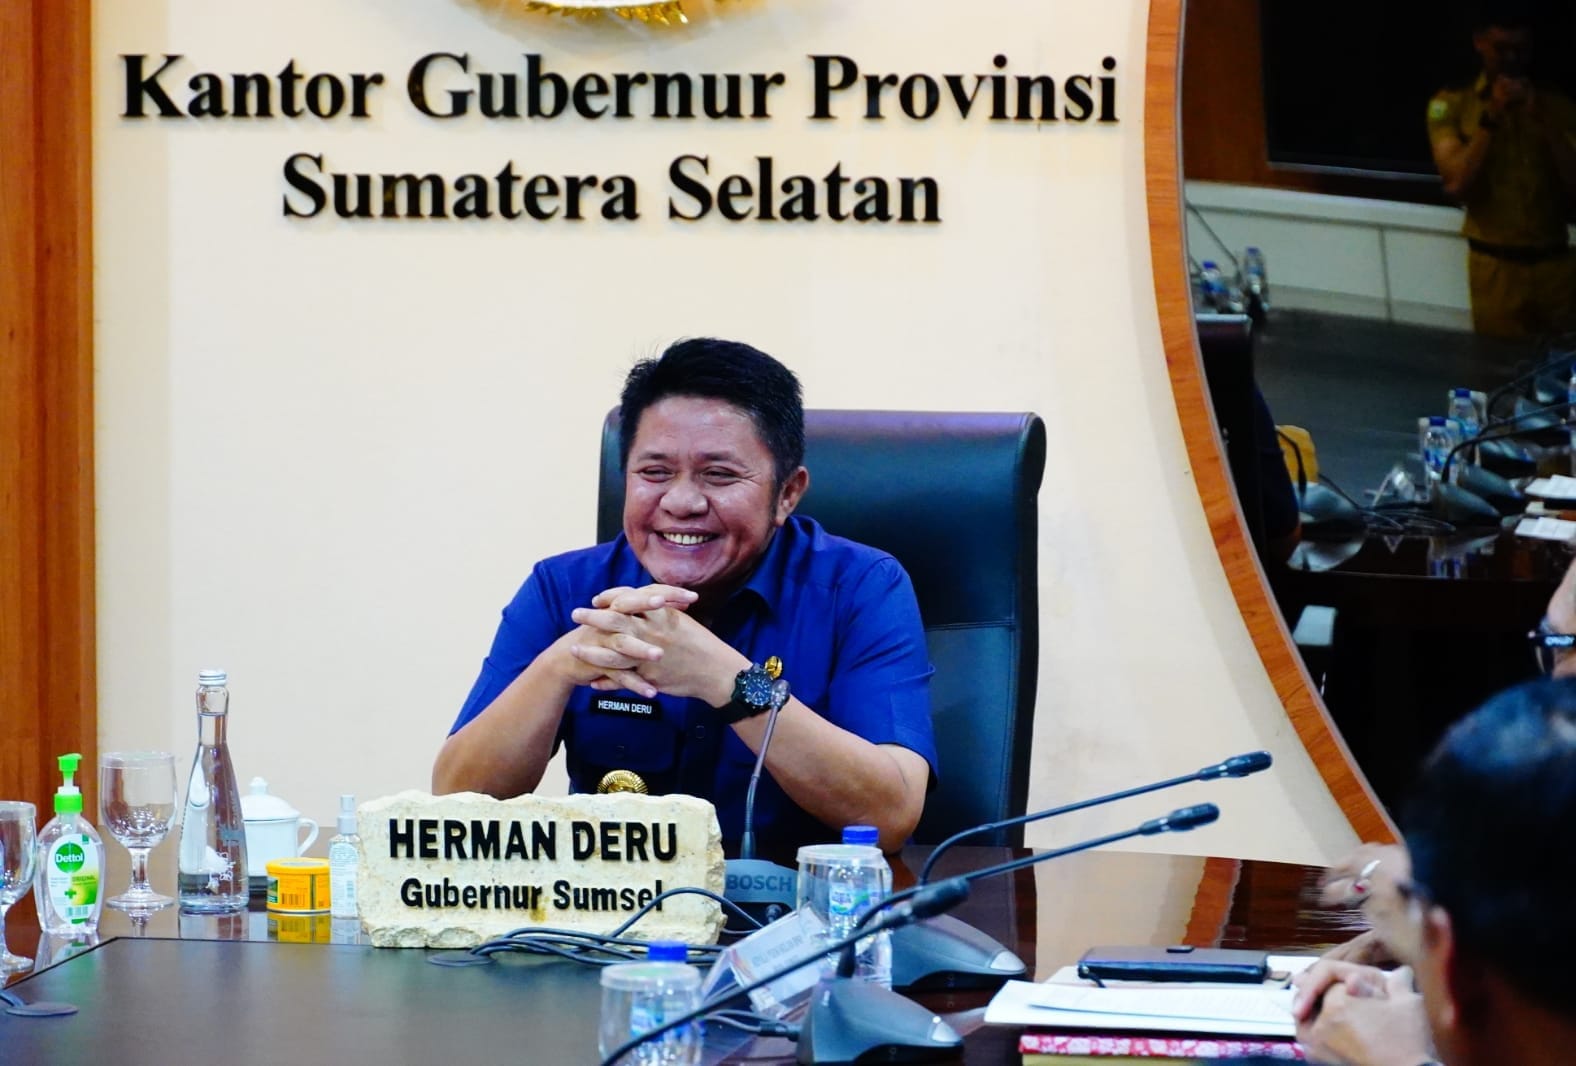 Herman Deru Satu-Satunya Gubernur di Indonesia  Terima Penghargaan Ini